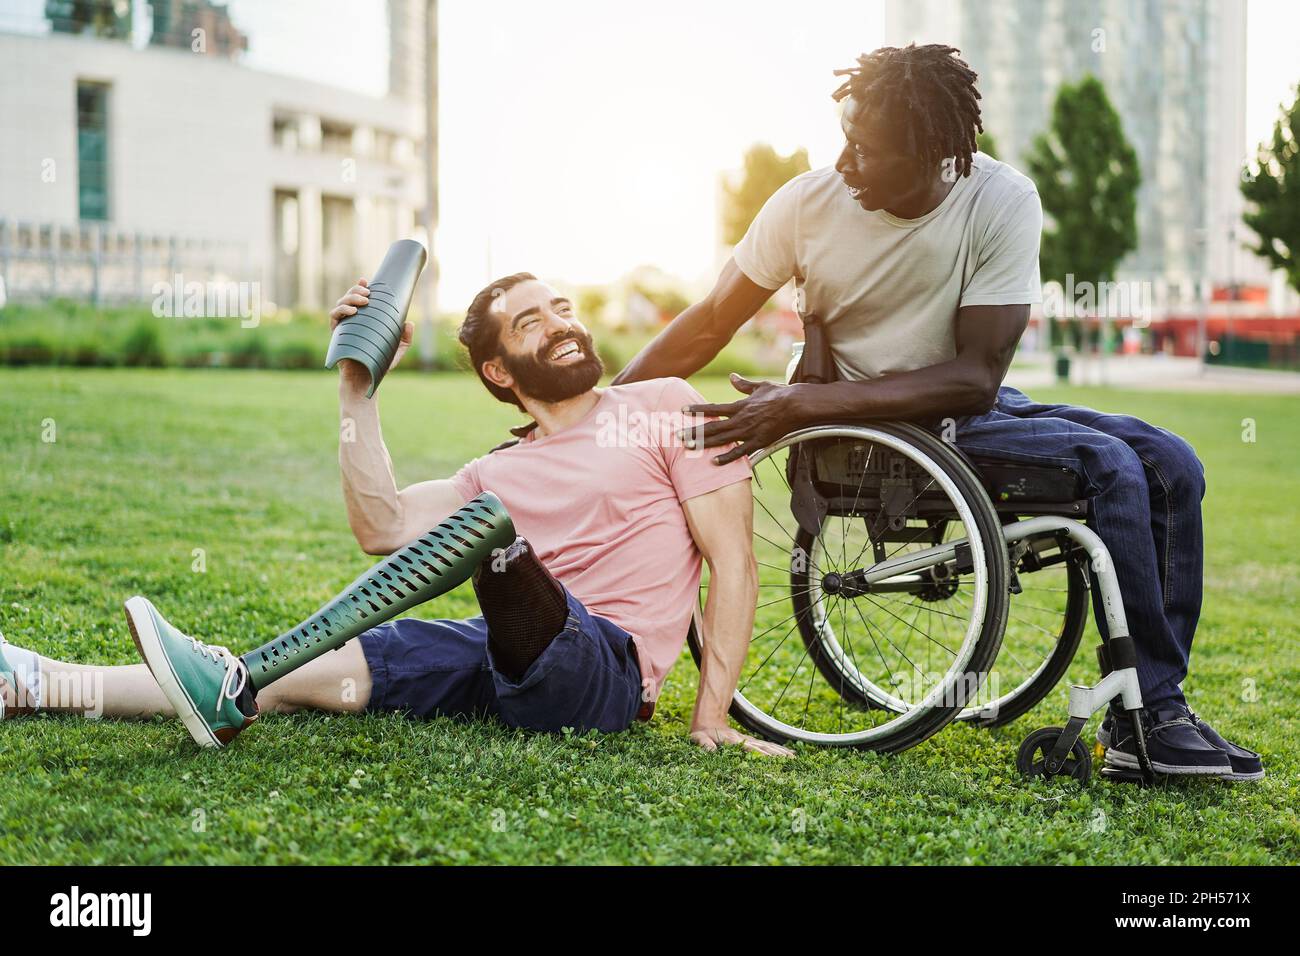 Glückliche Freunde mit Behinderung, die Spaß im Park City haben - Fokus auf afrikanischem Männergesicht Stockfoto